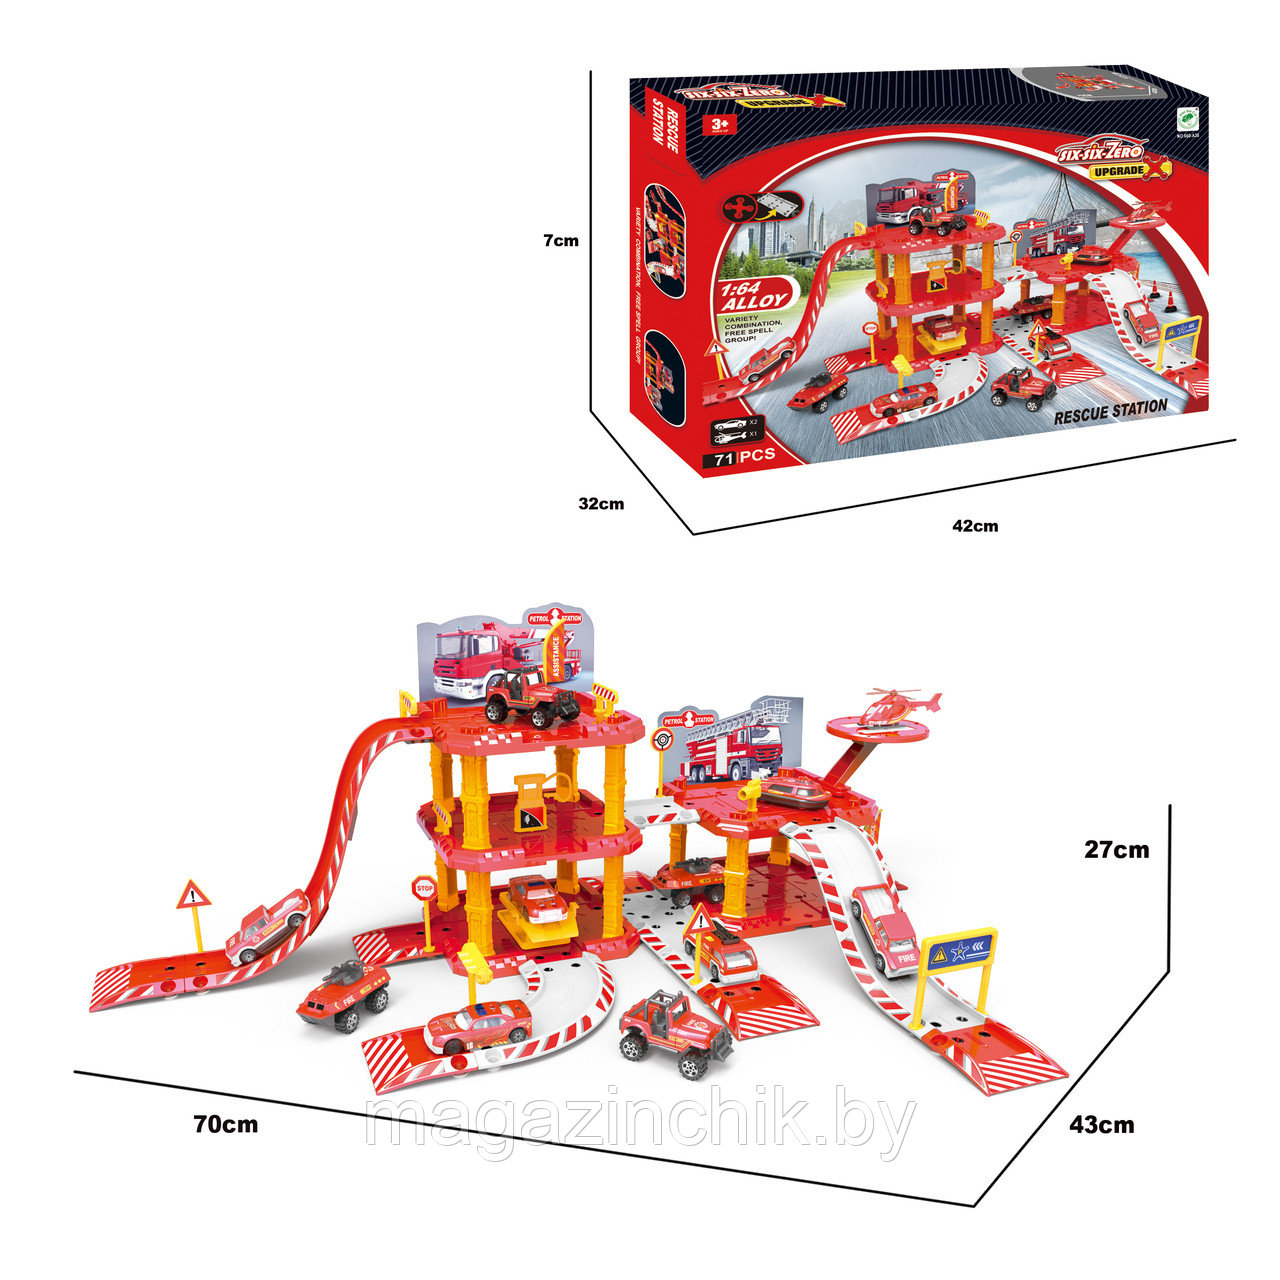 Детский игровой набор "Пожарная станция" 660-A38, 51 дет.